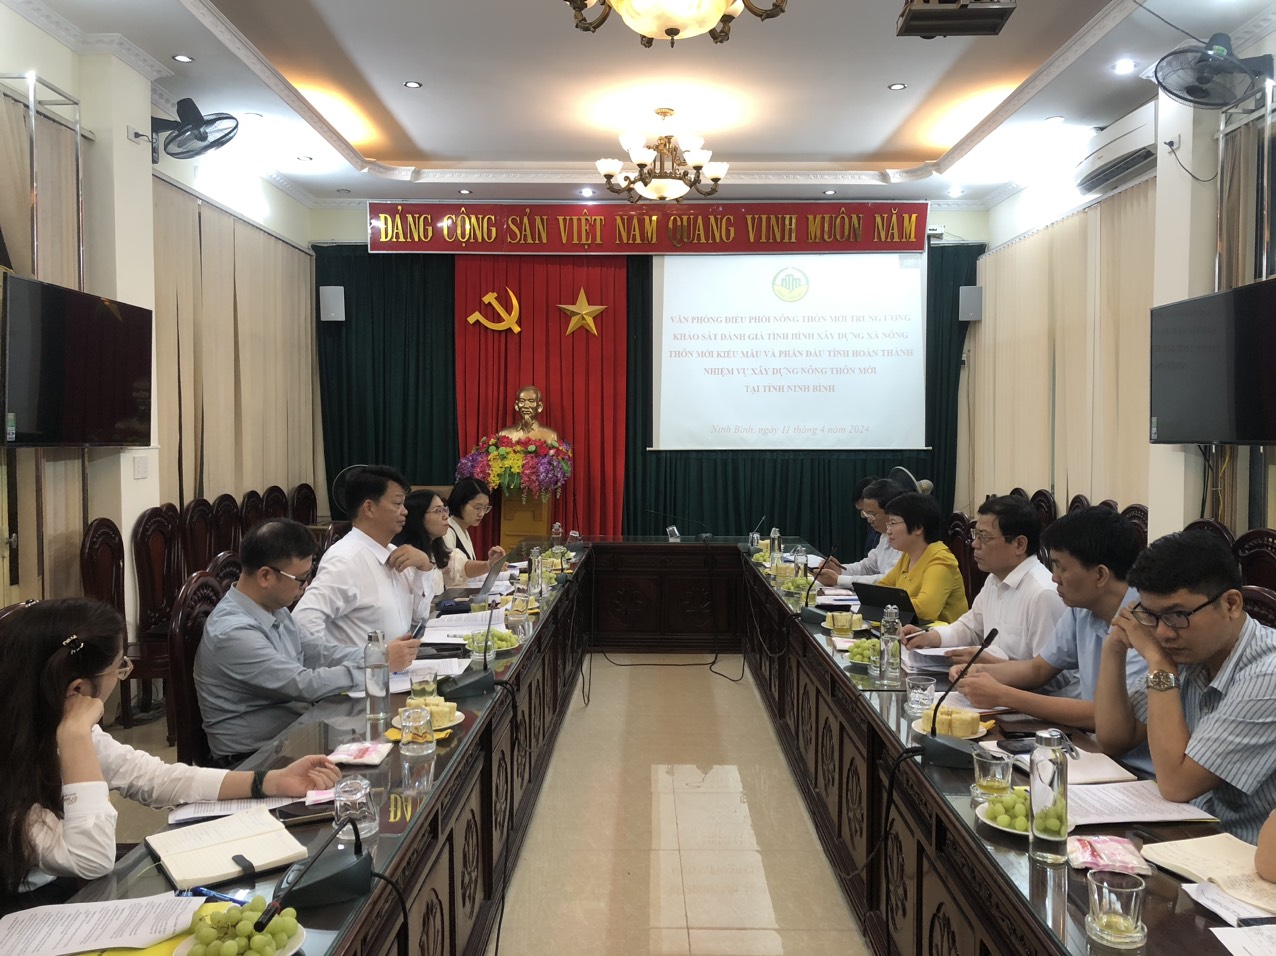 Văn phòng Điều phối nông thôn mới Trung ương khảo sát, đánh giá về tình hình xây dựng xã nông thôn mới kiểu mẫu và phấn đấu tỉnh hoàn thành nhiệm vụ xây dựng nông thôn mới tại tỉnh Ninh Bình